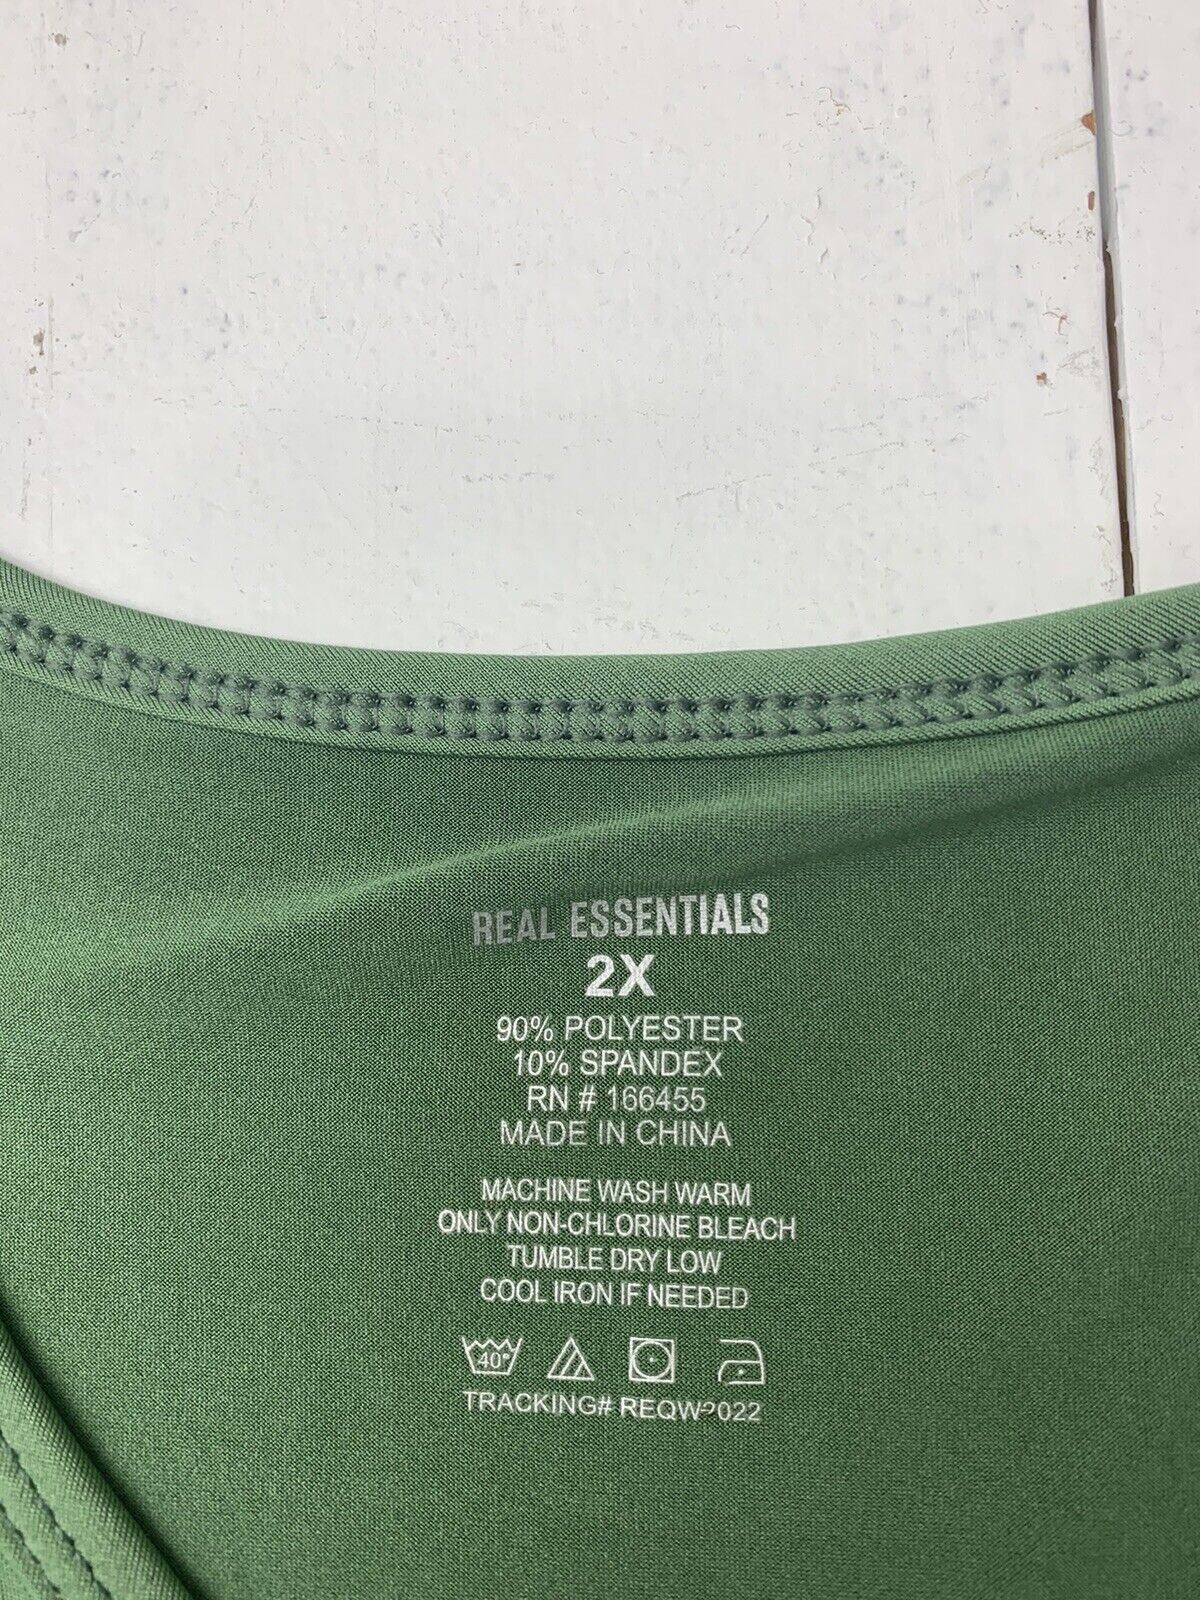 Essentials Womens Dark Green Athletic Shirt Size XL - beyond exchange